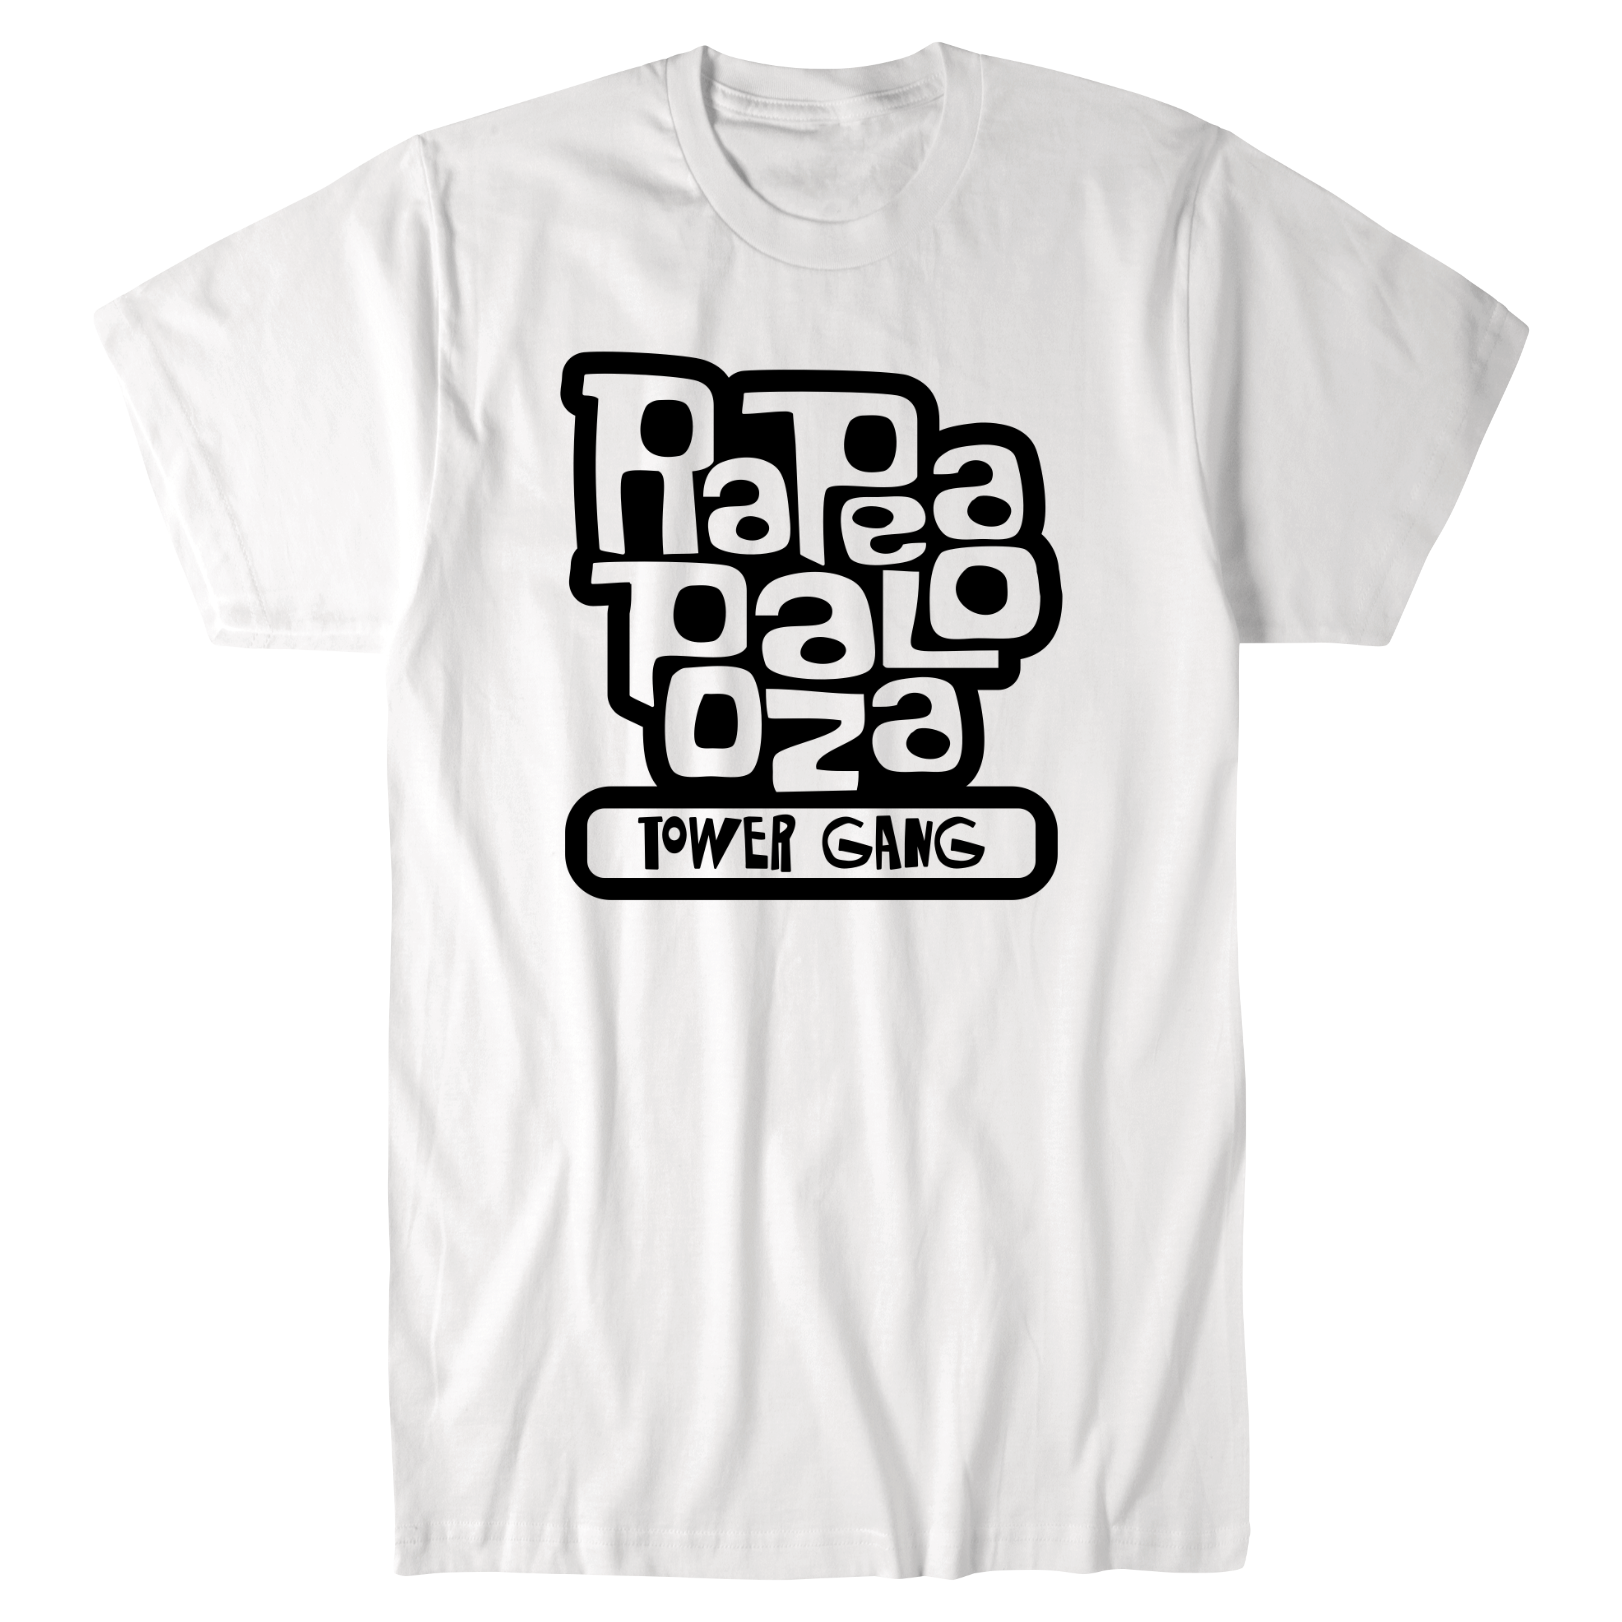 Rapeapalooza T-Shirt